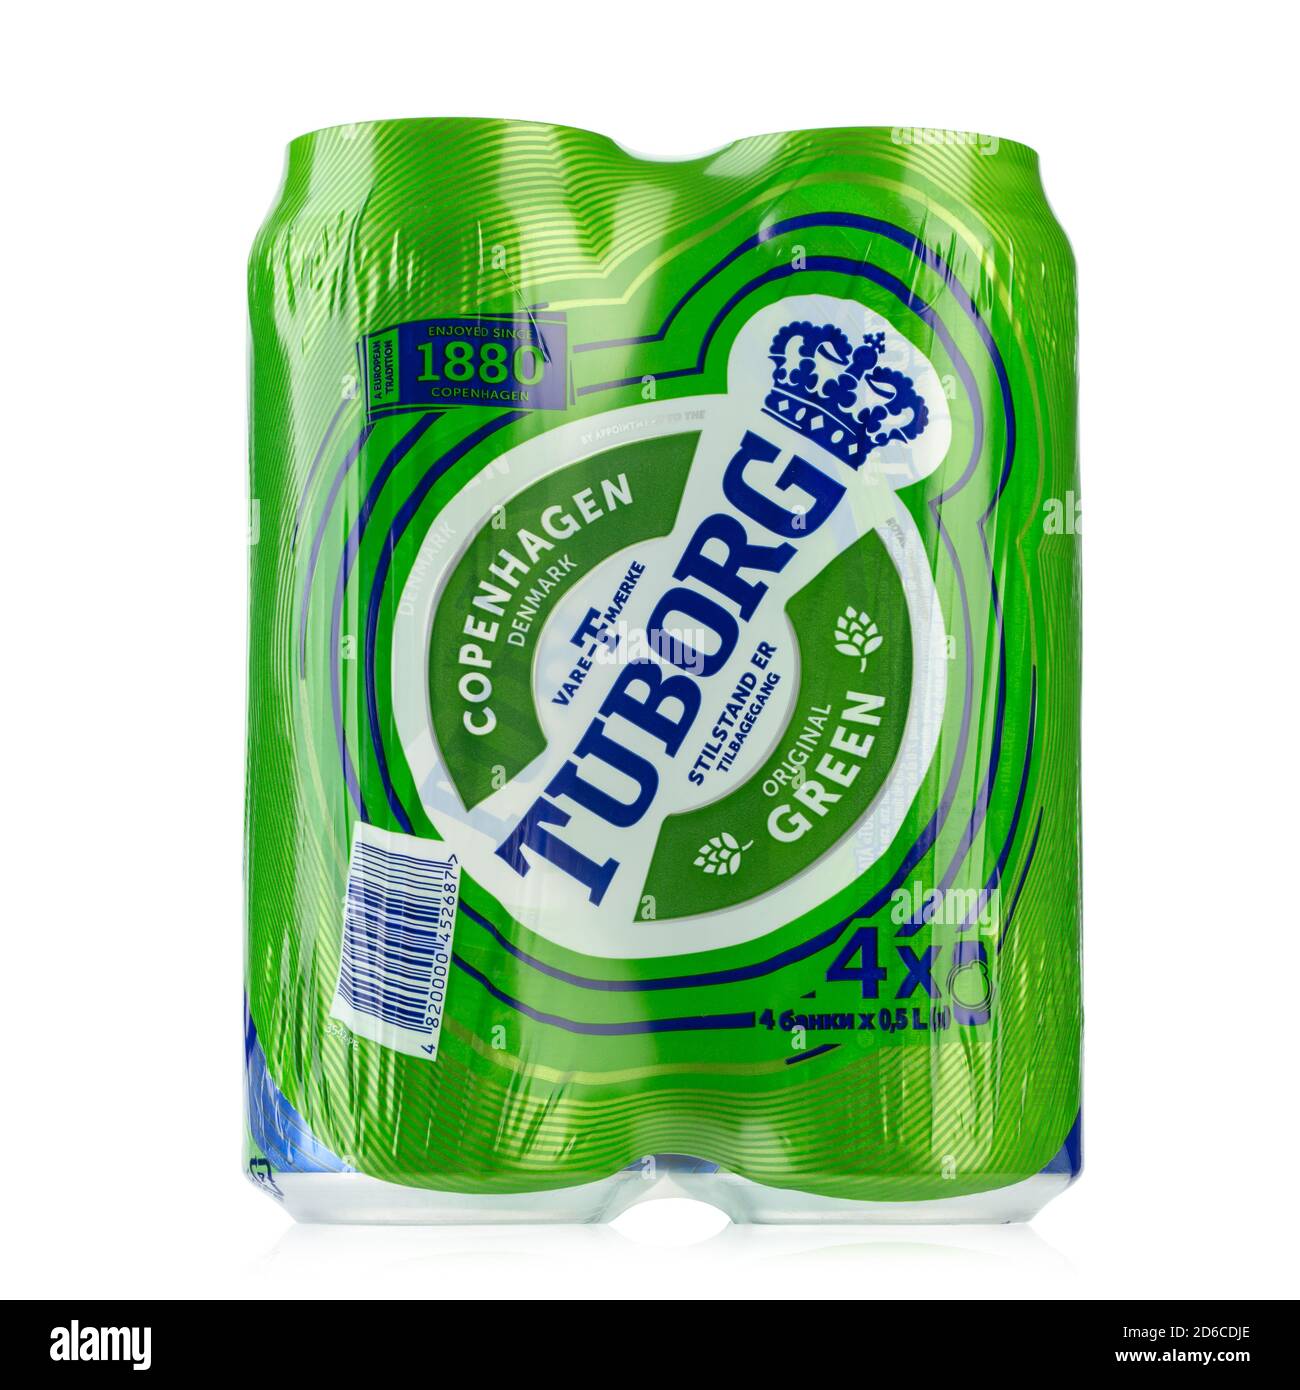 Ucrania, Kiev - Octubre de 07. 2020: Cuatro paquetes de aluminio de cerveza verde Tuborg sobre fondo blanco. Tuborg es una empresa cervecera danesa fundada en 1873. F Foto de stock